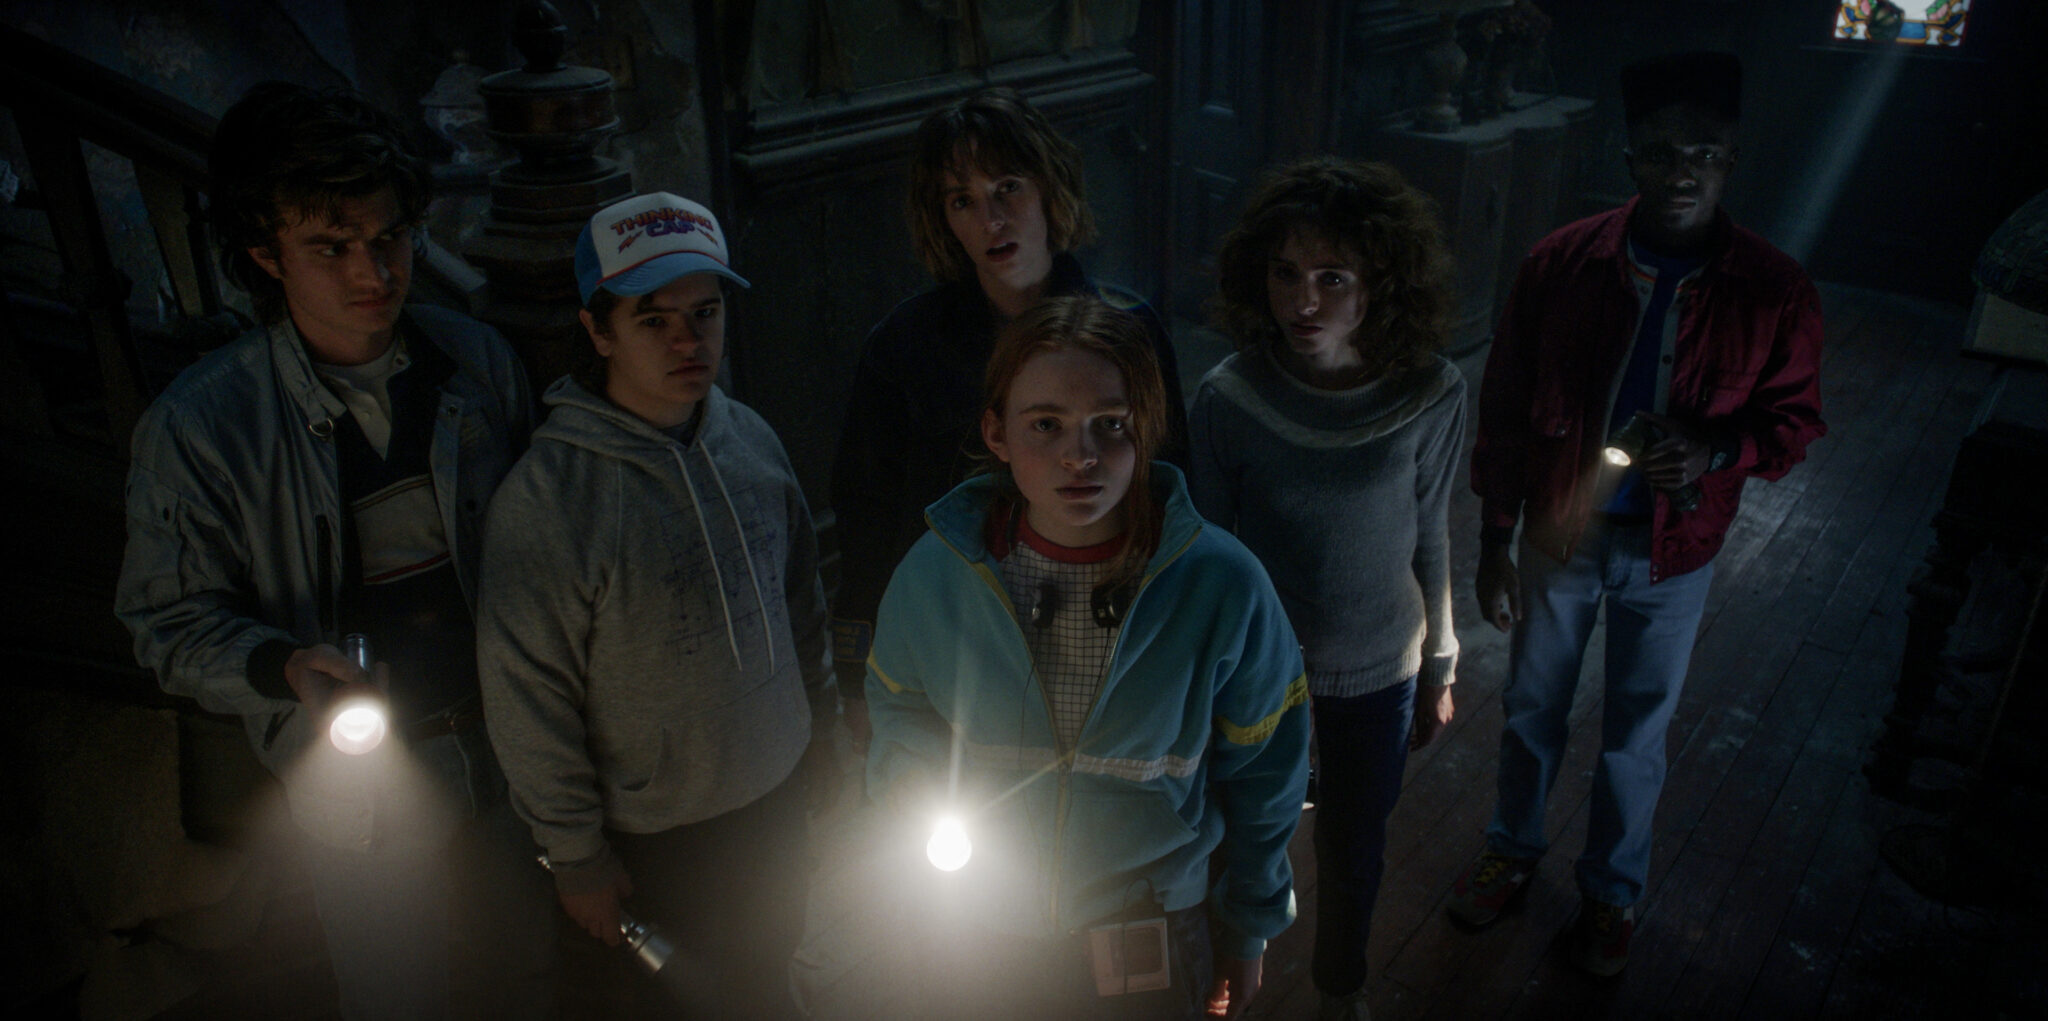 Man sieht in einem dunklen Raum sechs junge Menschen nebeneinander, drei davon haben Taschenlampen in der Hand.